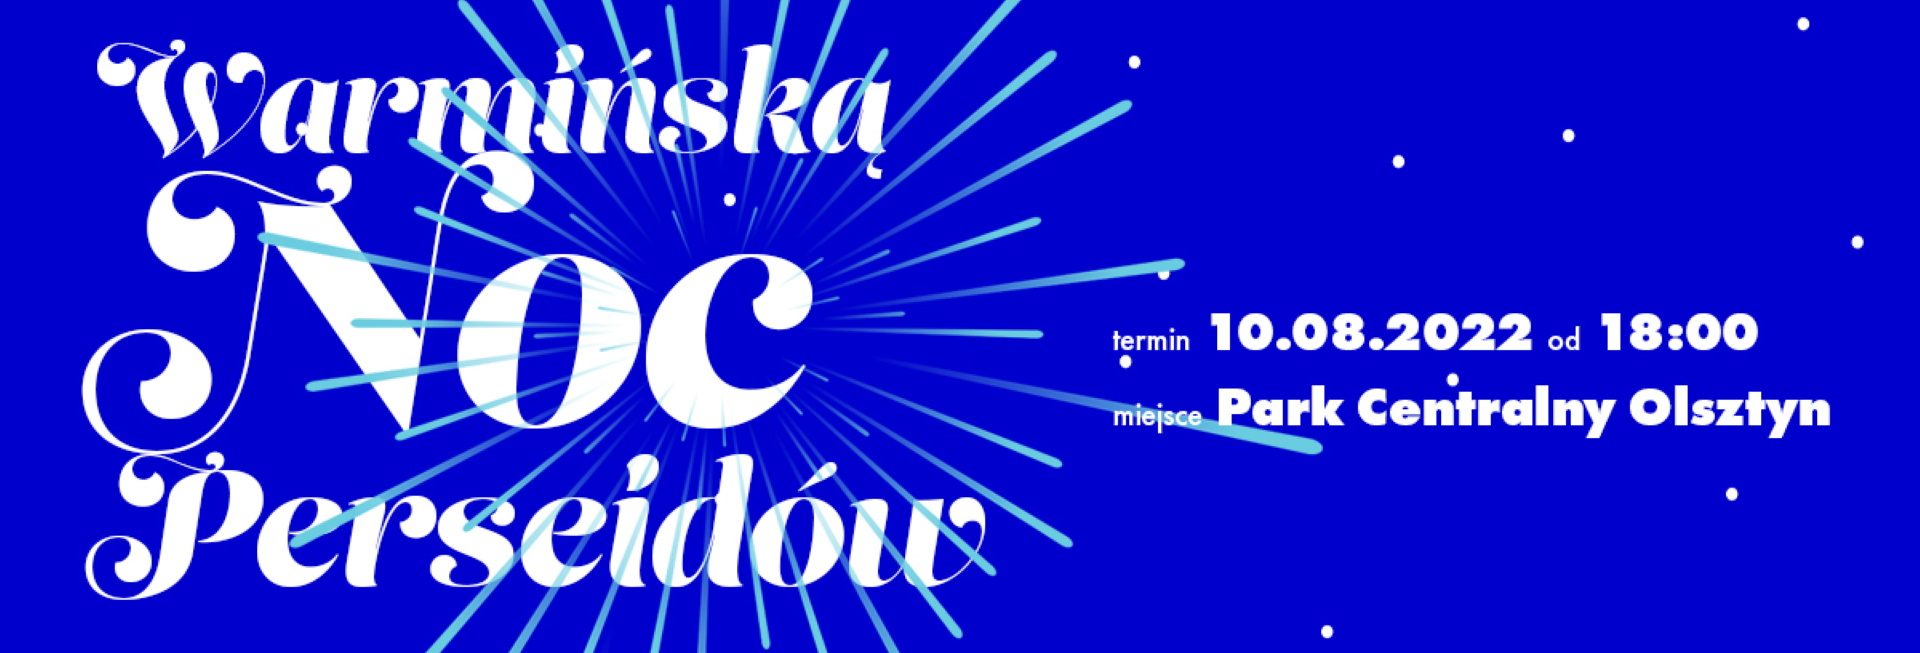 Plakat zapraszający do Parku Centralnego w Olsztynie na Warmińską Noc Perseidów Olsztyn 2022. 